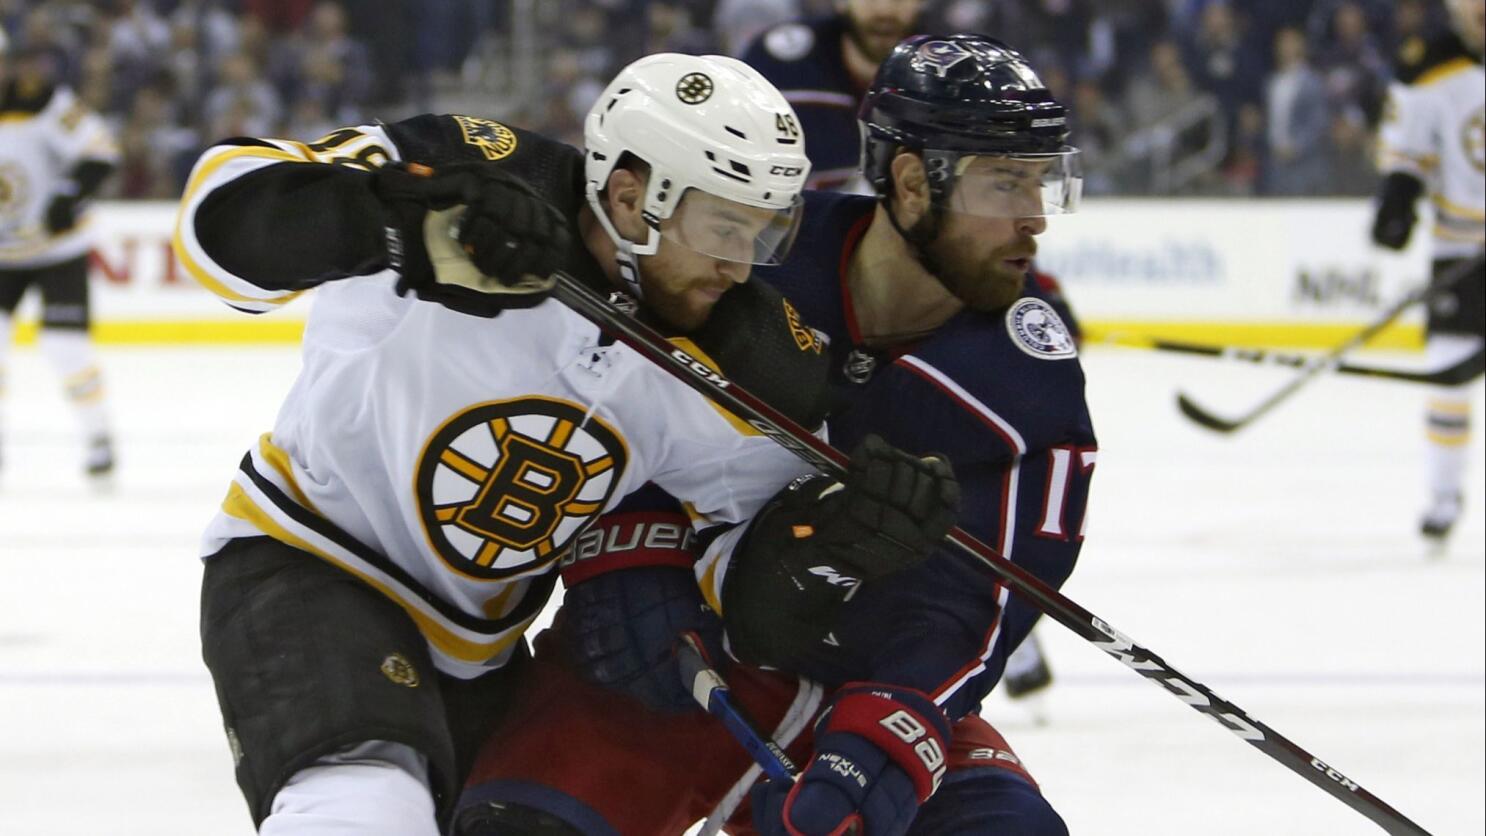 Caps edge Bruins 2-1 in SO in Chara's return to Boston